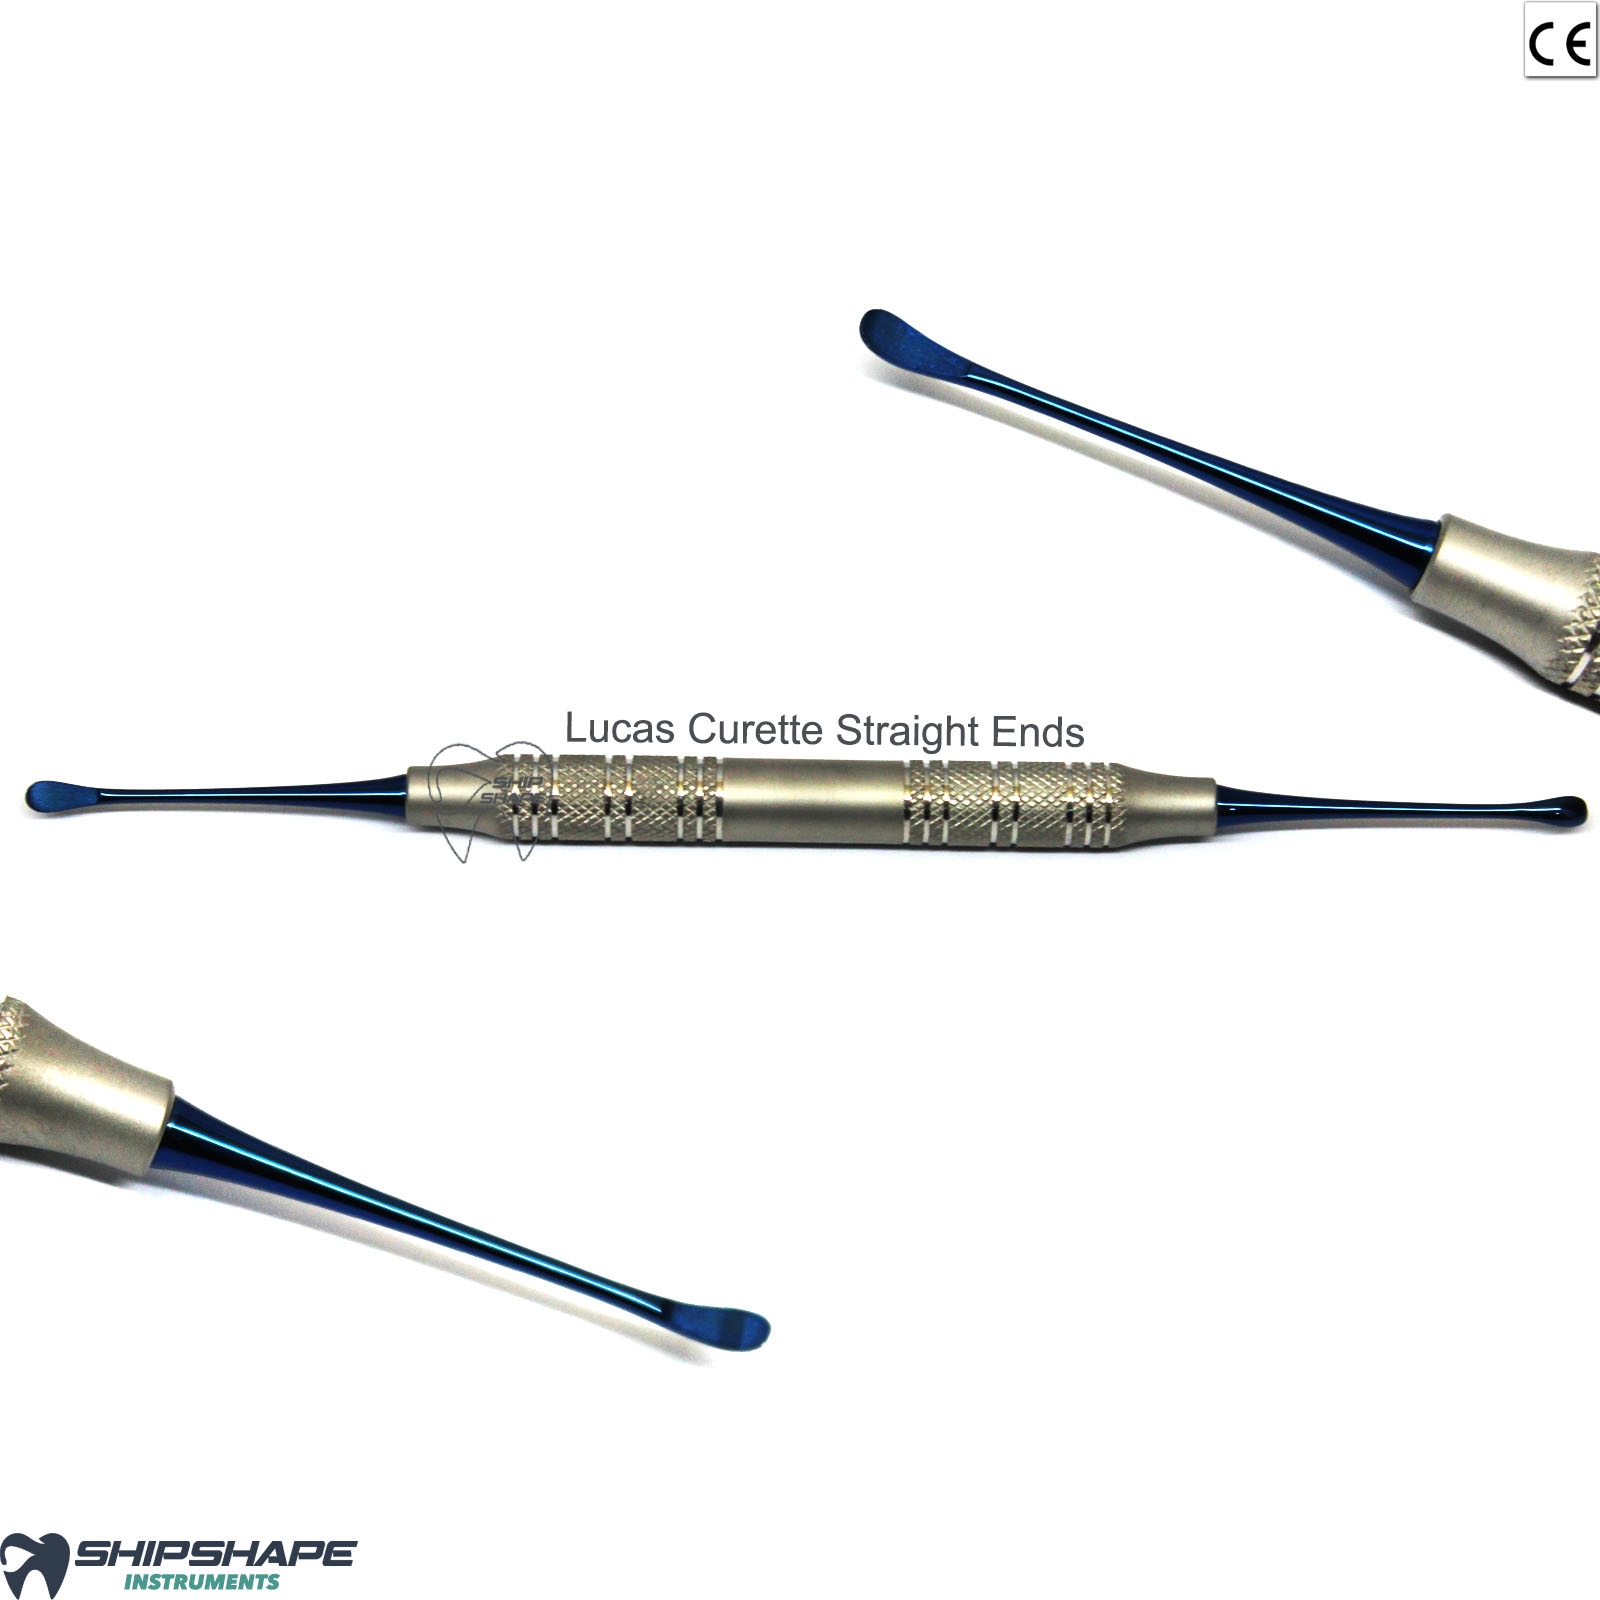 Dental Periodontal Surgical Curette Straight Lucas Curettes Titanium Blue Coated-0